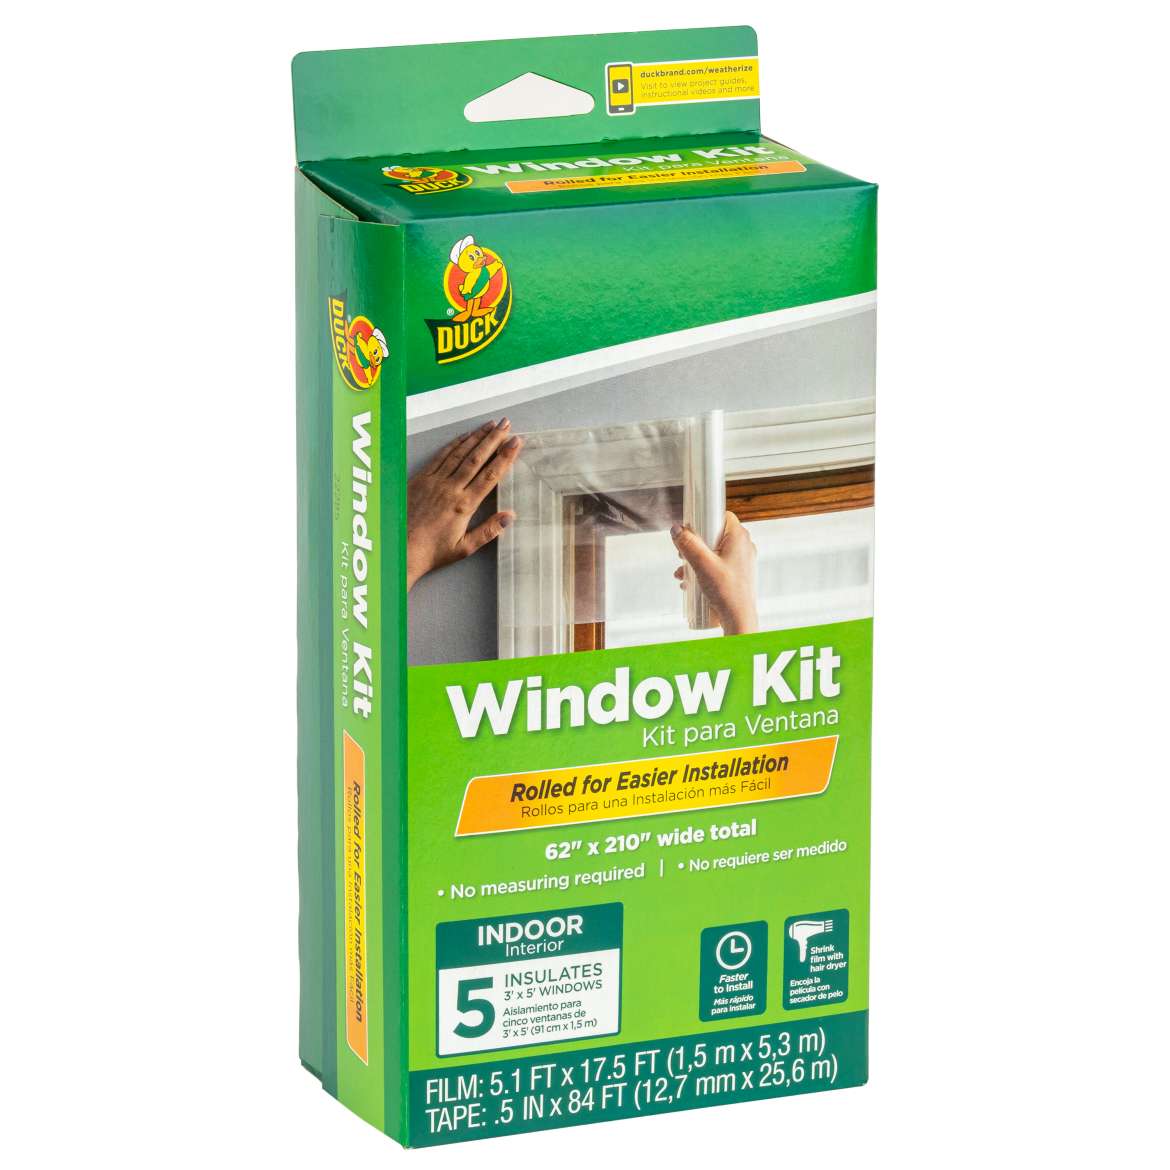 Duck® Rolled Window Kit - Indoor, 5 pk, 62 in. x 210 in.